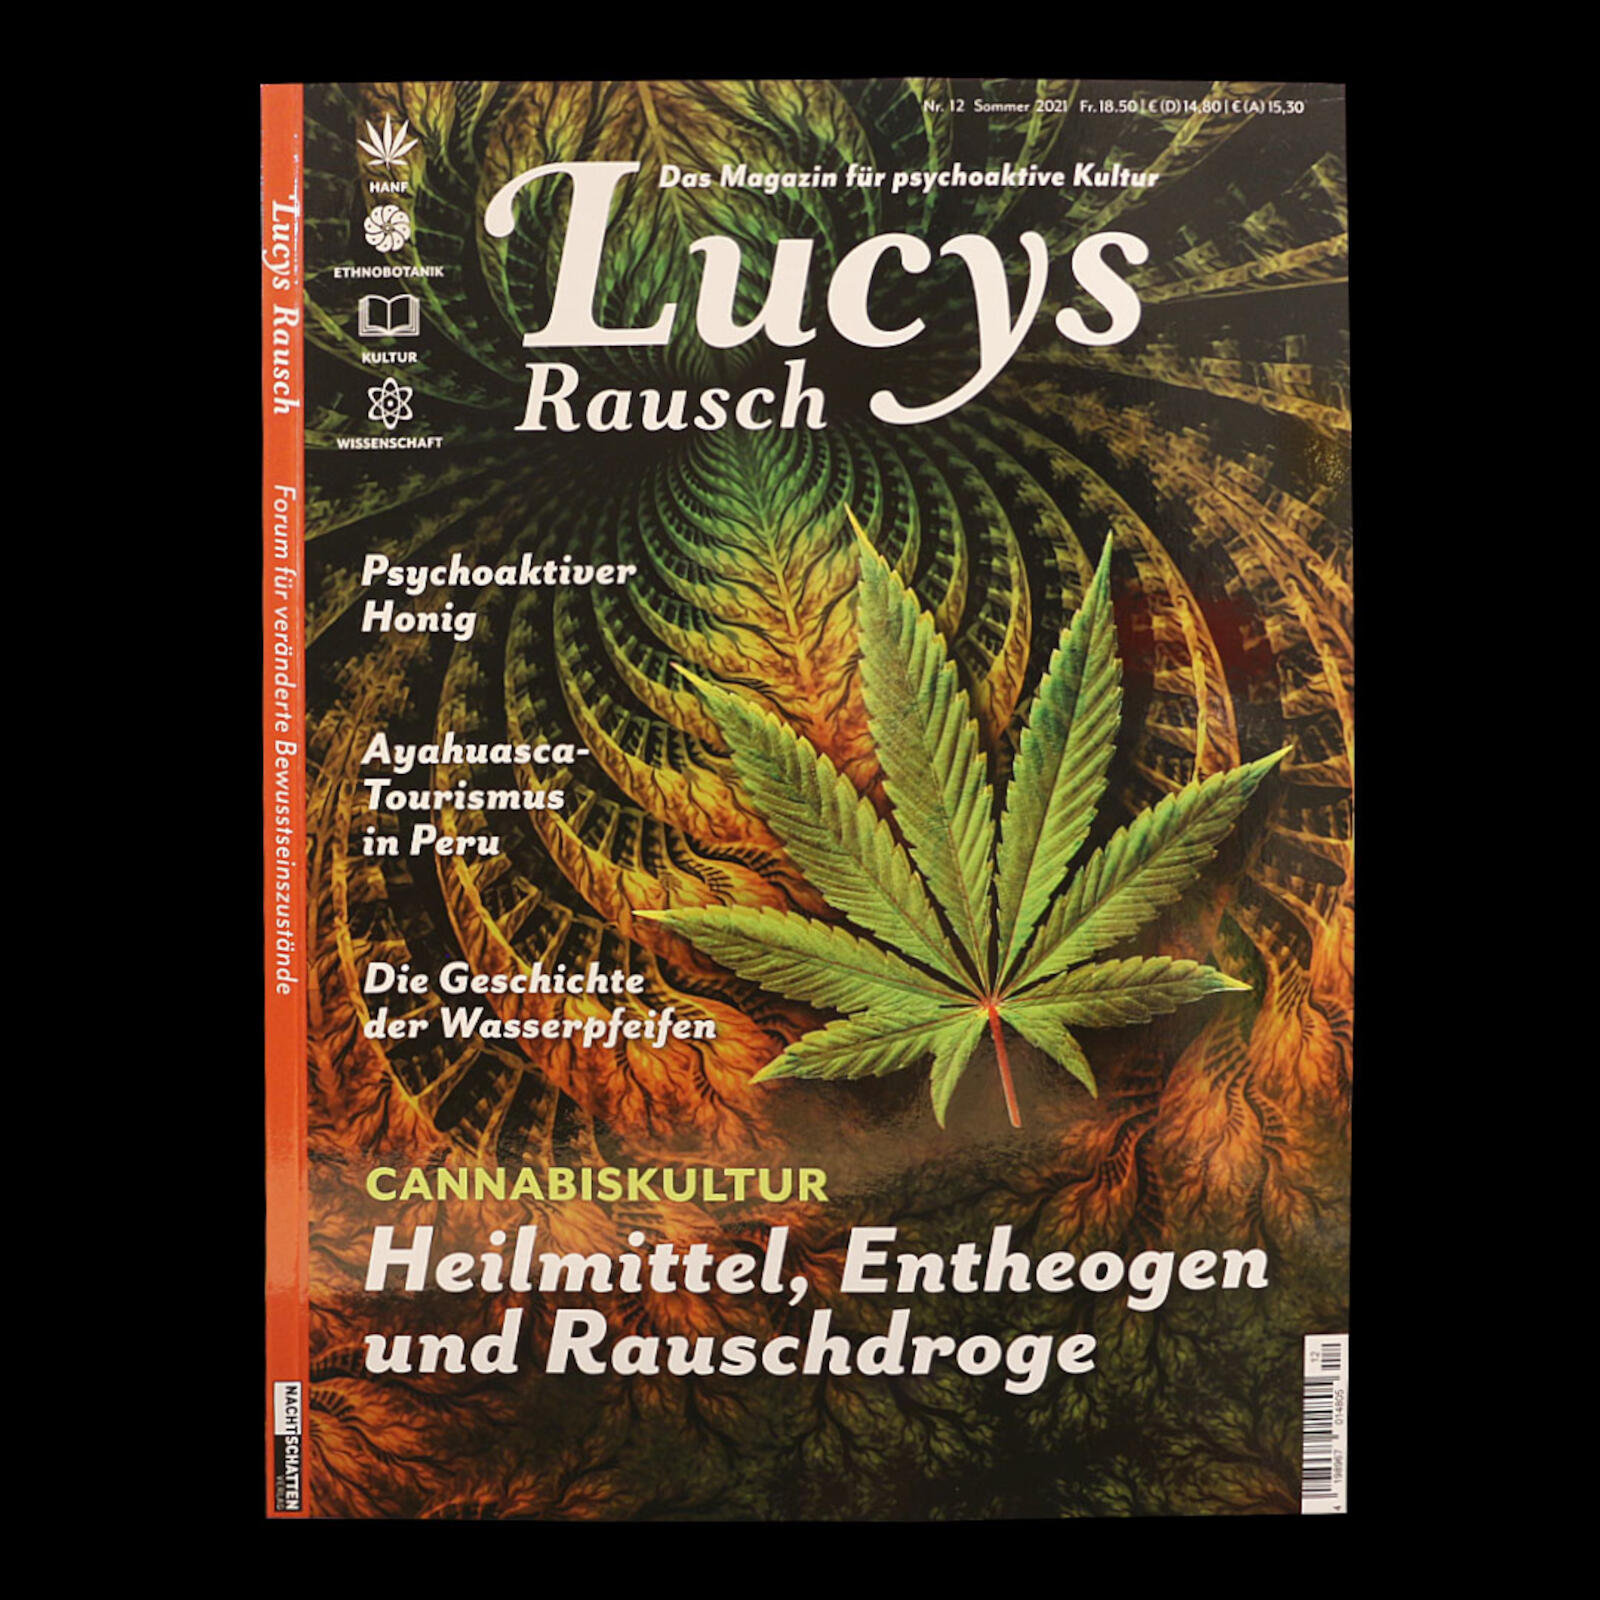 Lucy's Rausch | Volume 12